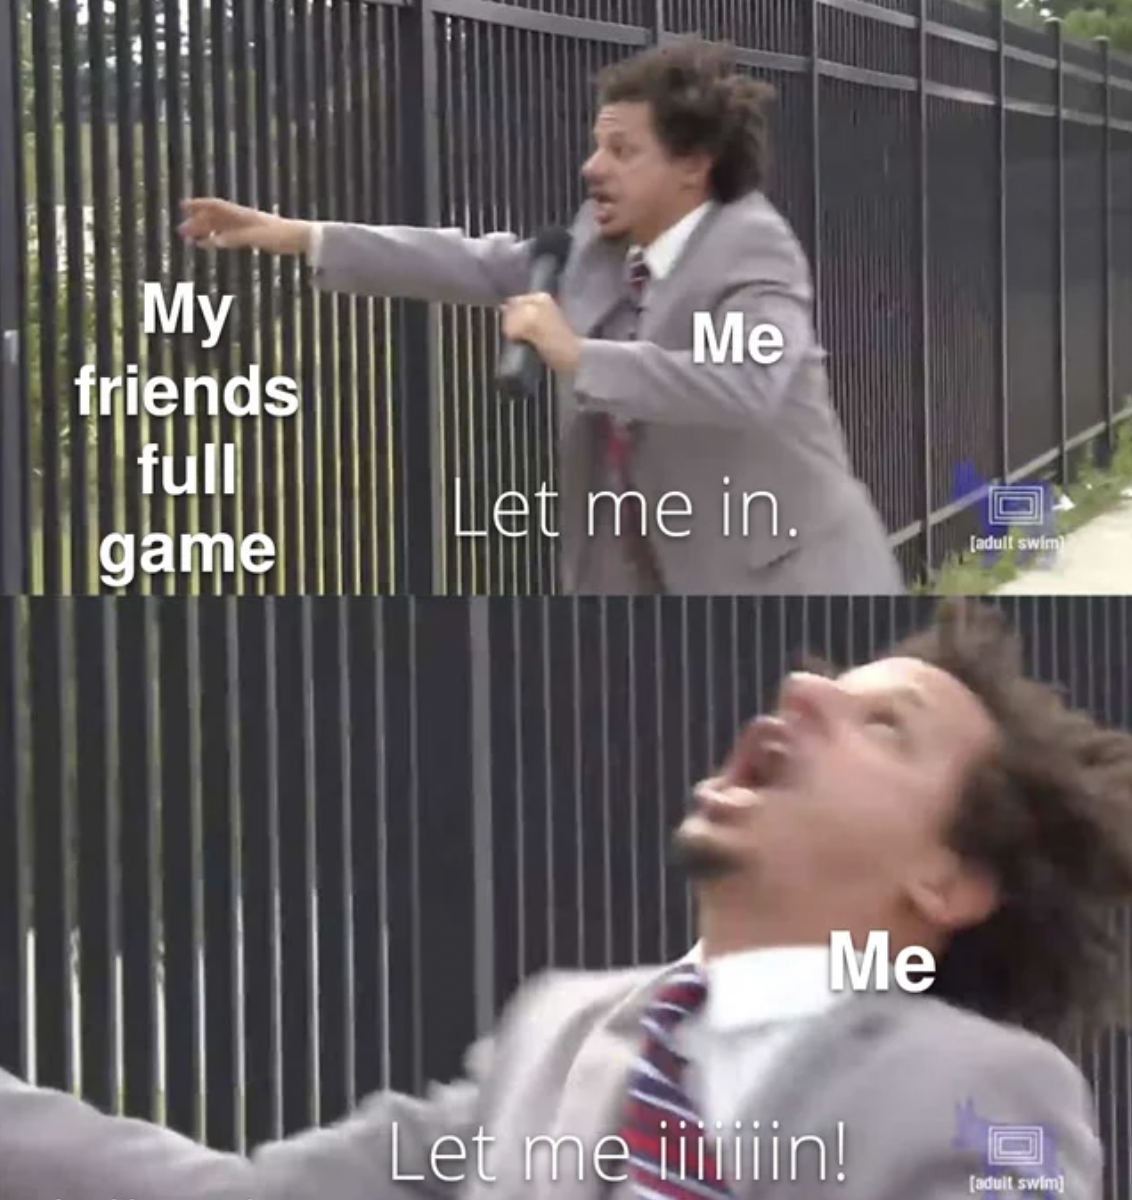 Gaming memes - spaghetti road memes - My friends full game Me Let me in. Me Let me iiiiiin